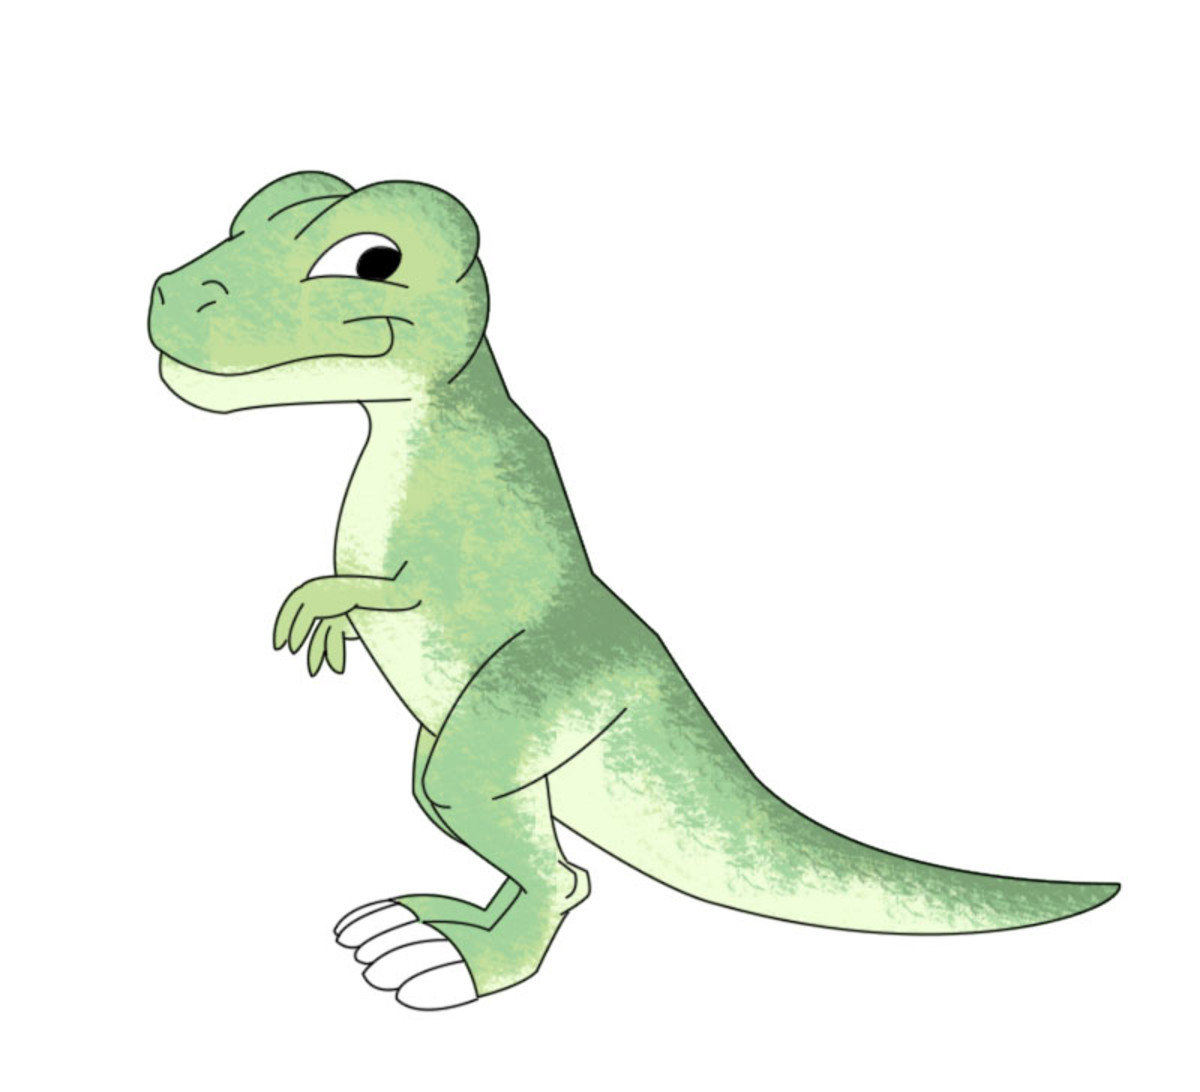 How to Draw a Cartoon T-Rex - FeltMagnet